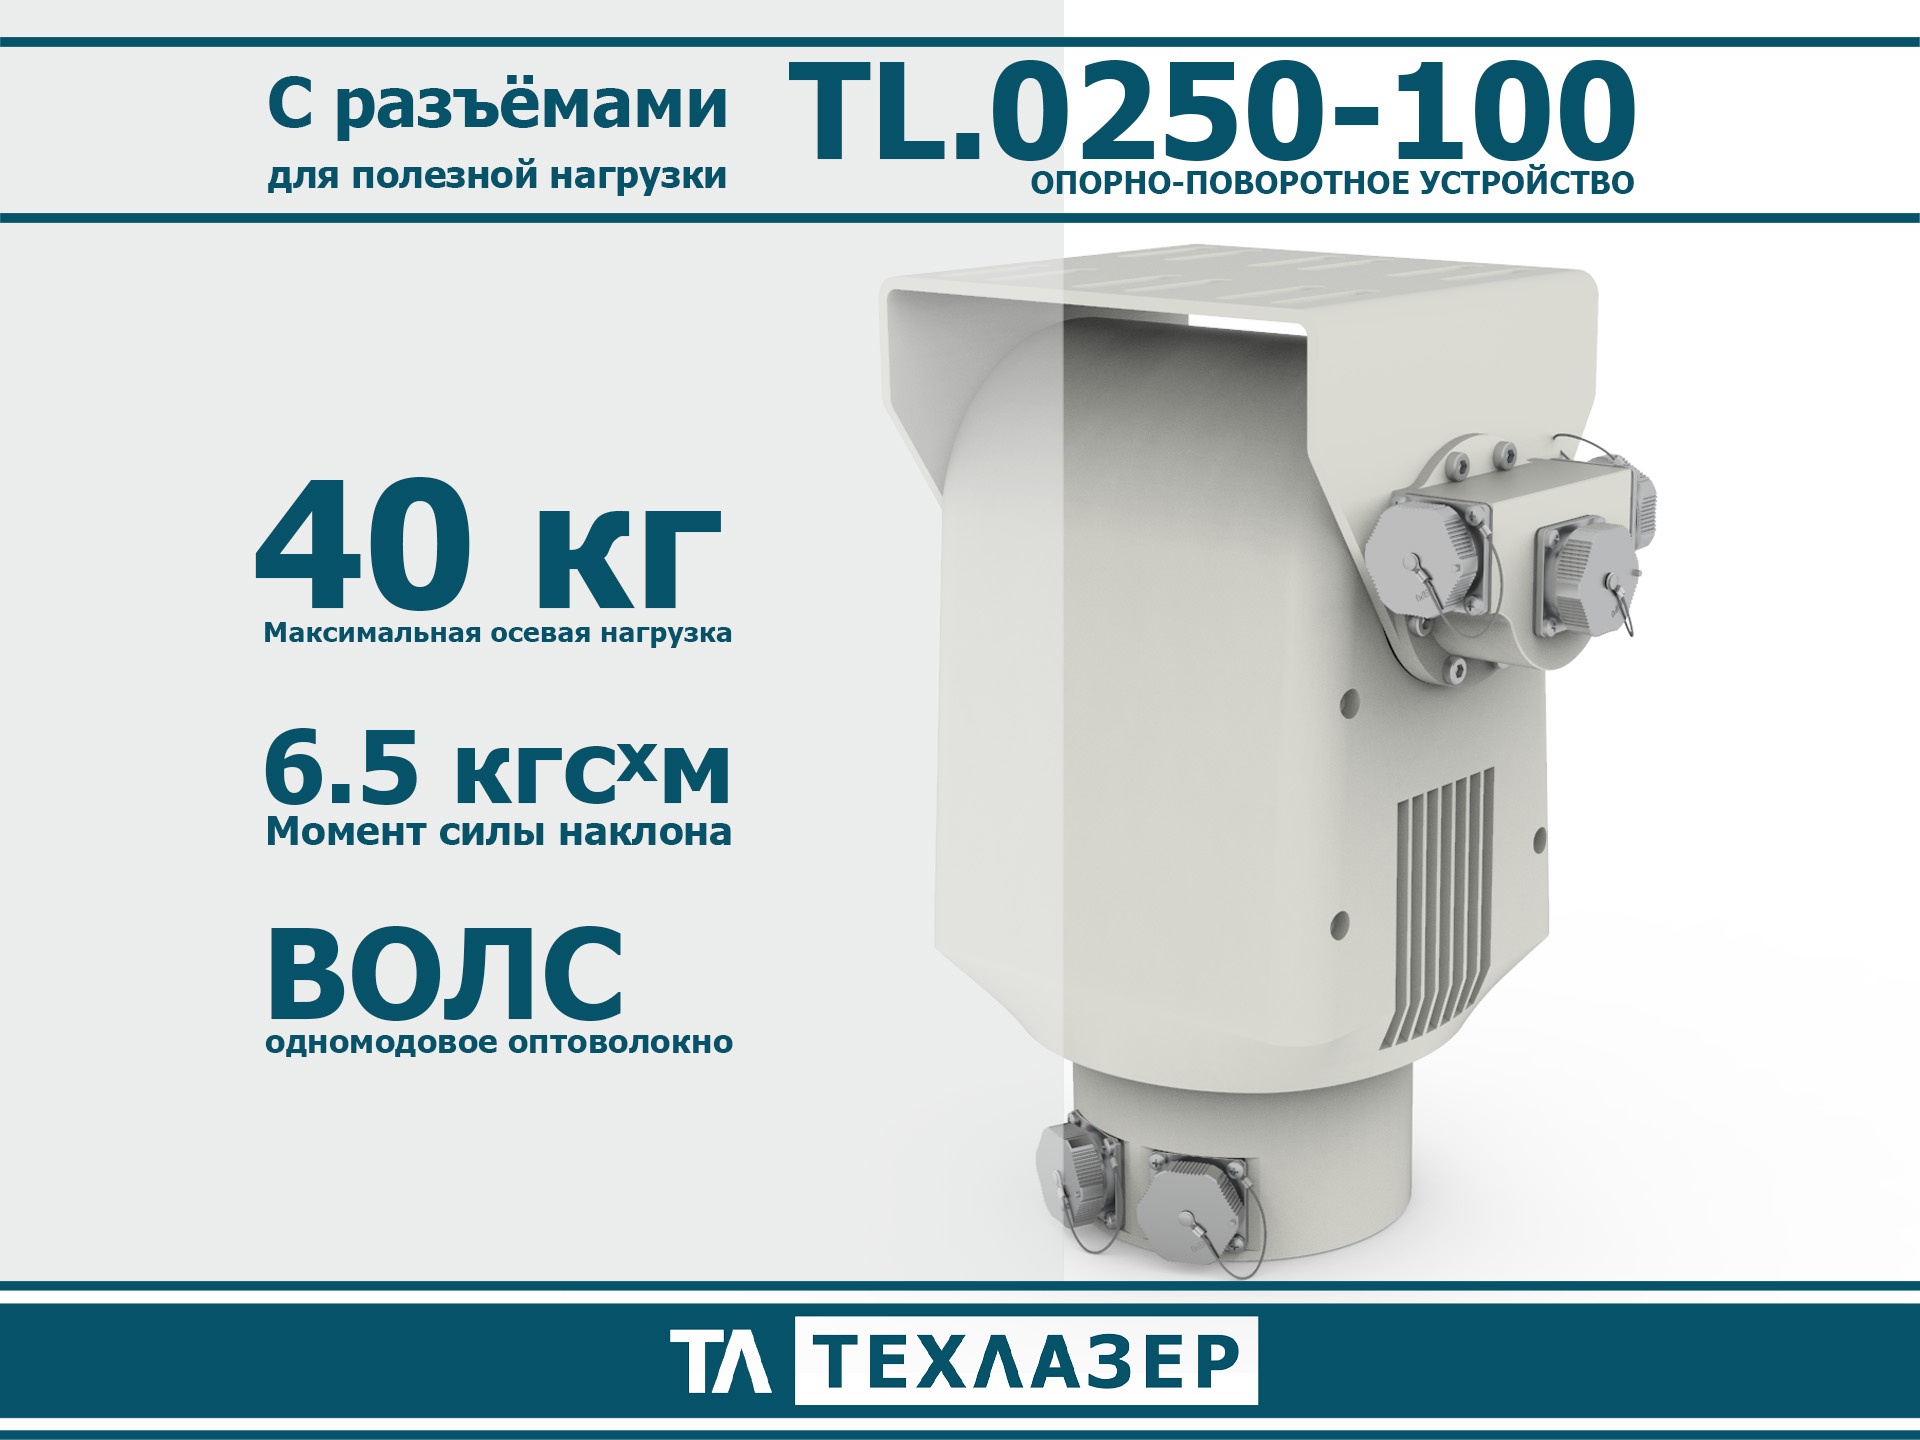 Двухосевое опорно-поворотное устройство TL.0250-100